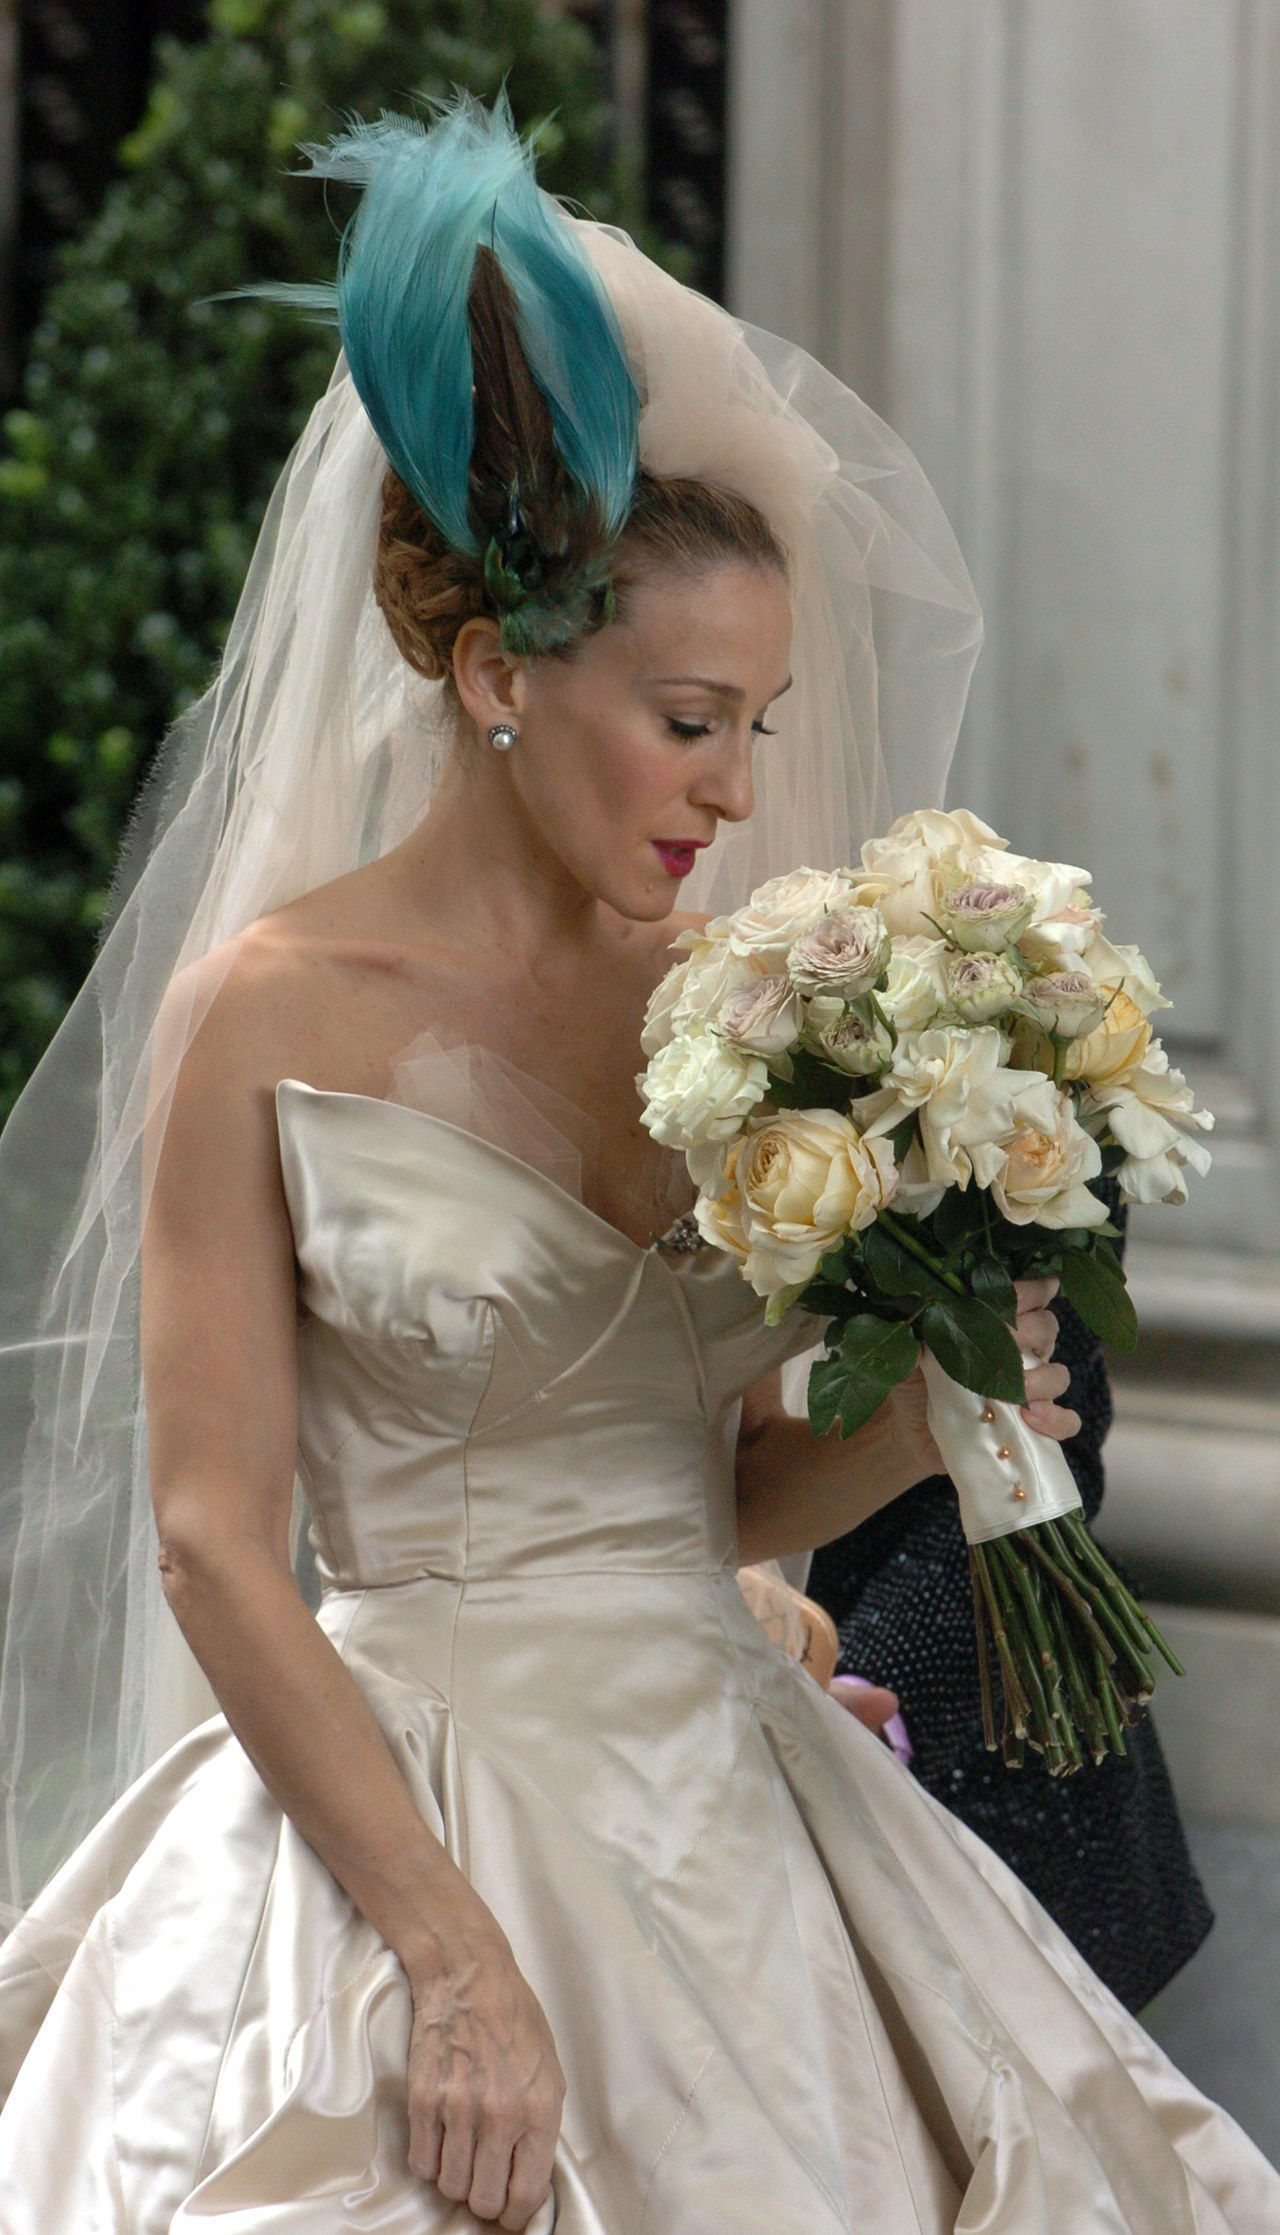 莎拉 Jessica Parker in wedding dress at Filming of Sex And